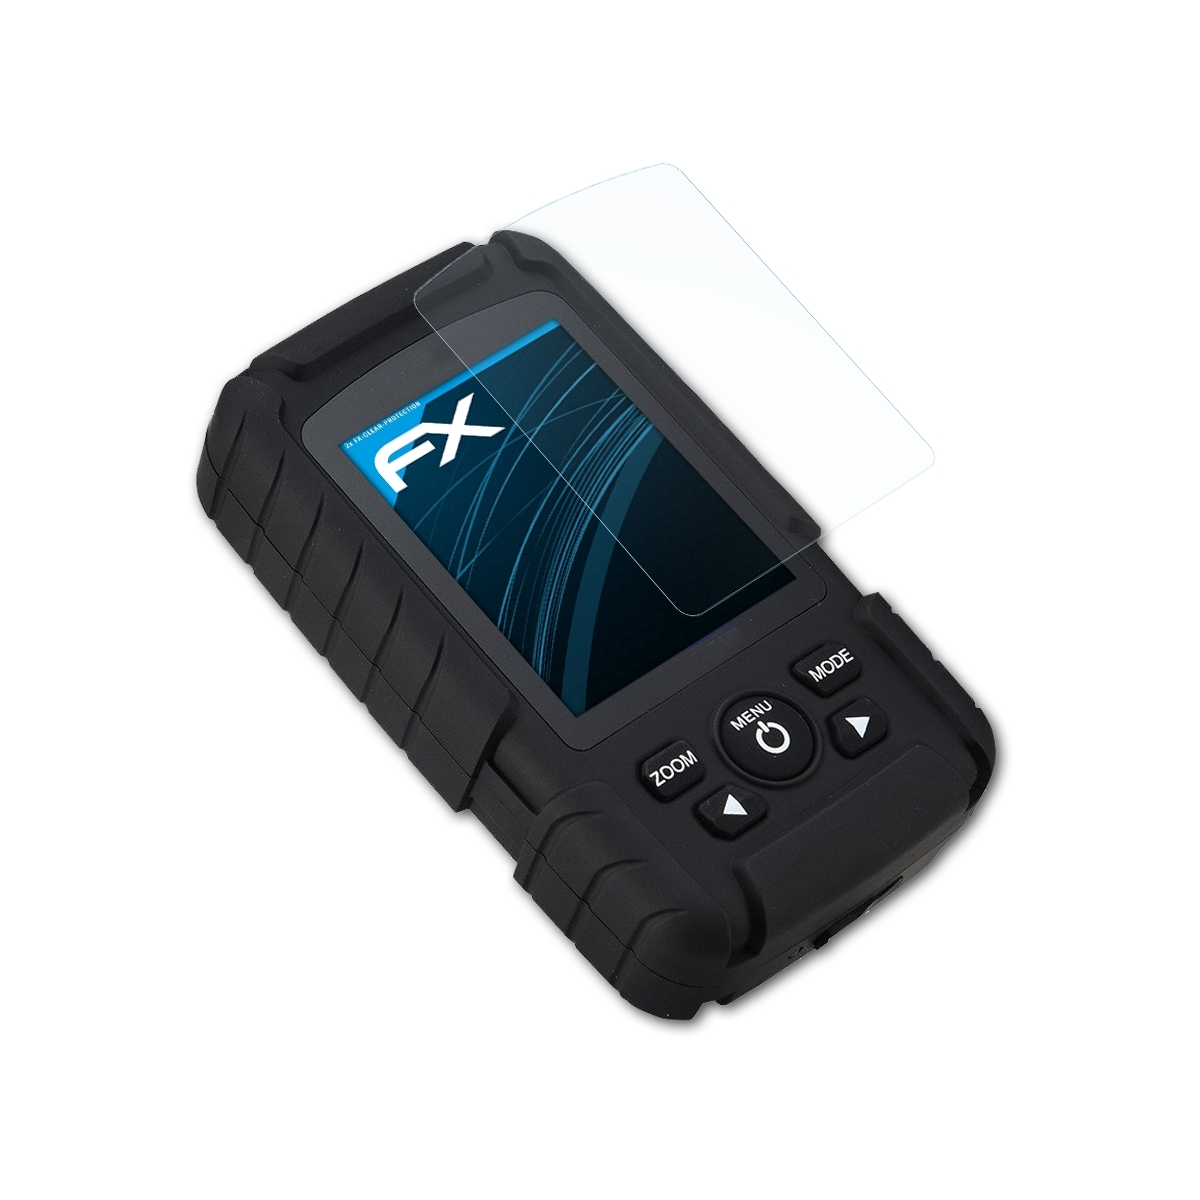 2x (FF718LiC)) FX-Clear Lucky Fishfinder Displayschutz(für ATFOLIX